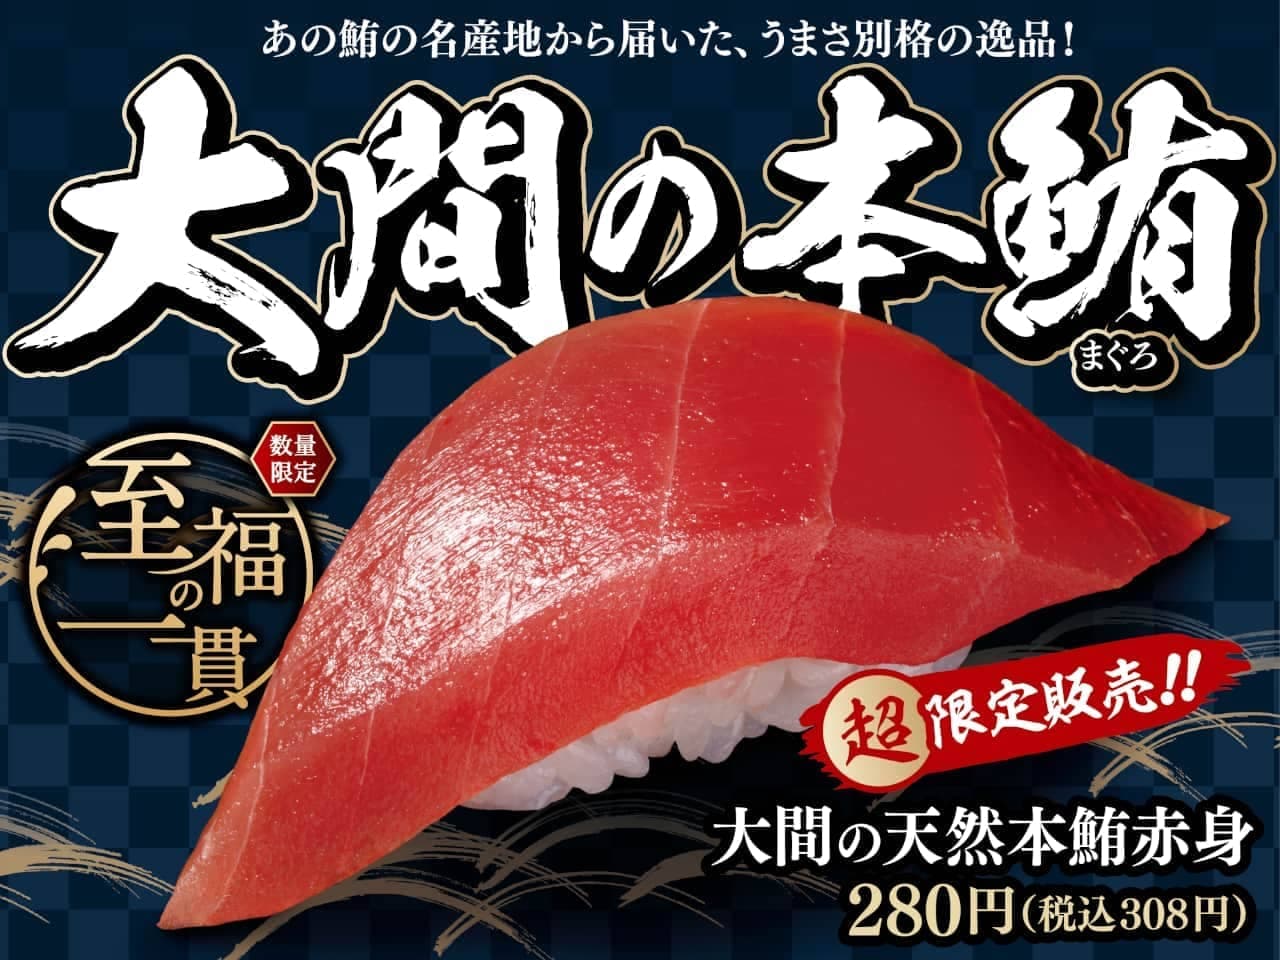 Hamazushi "Oma's natural tuna tuna lean meat"